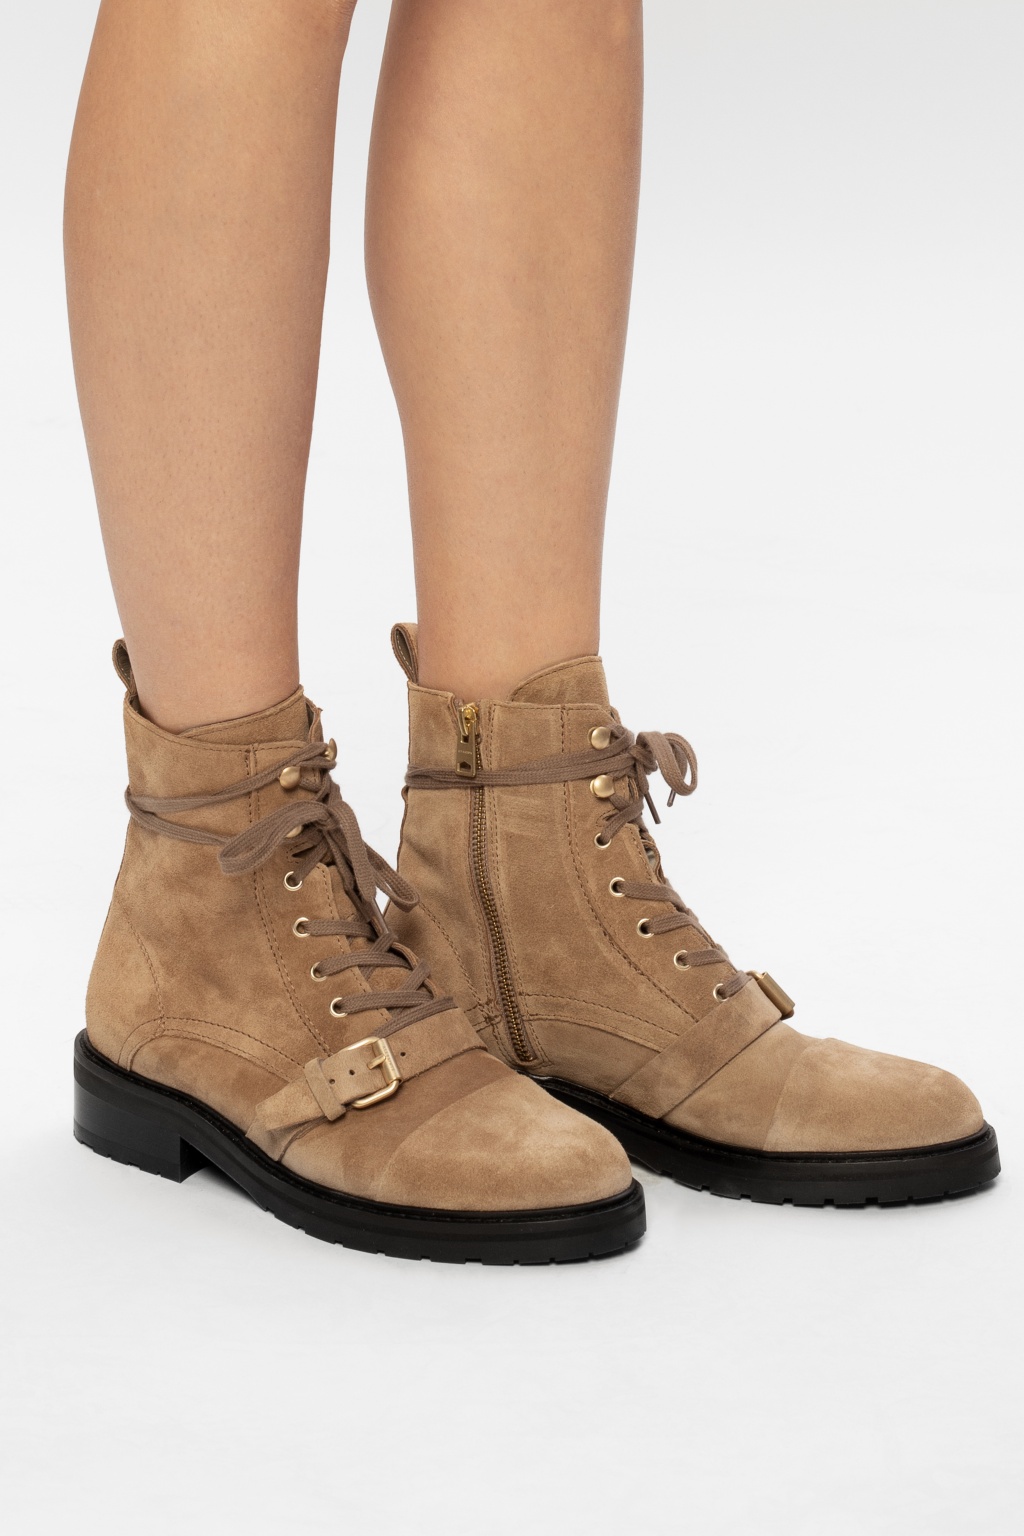 AllSaints 'Donita' suede ankle boots | Women's Shoes | Vitkac